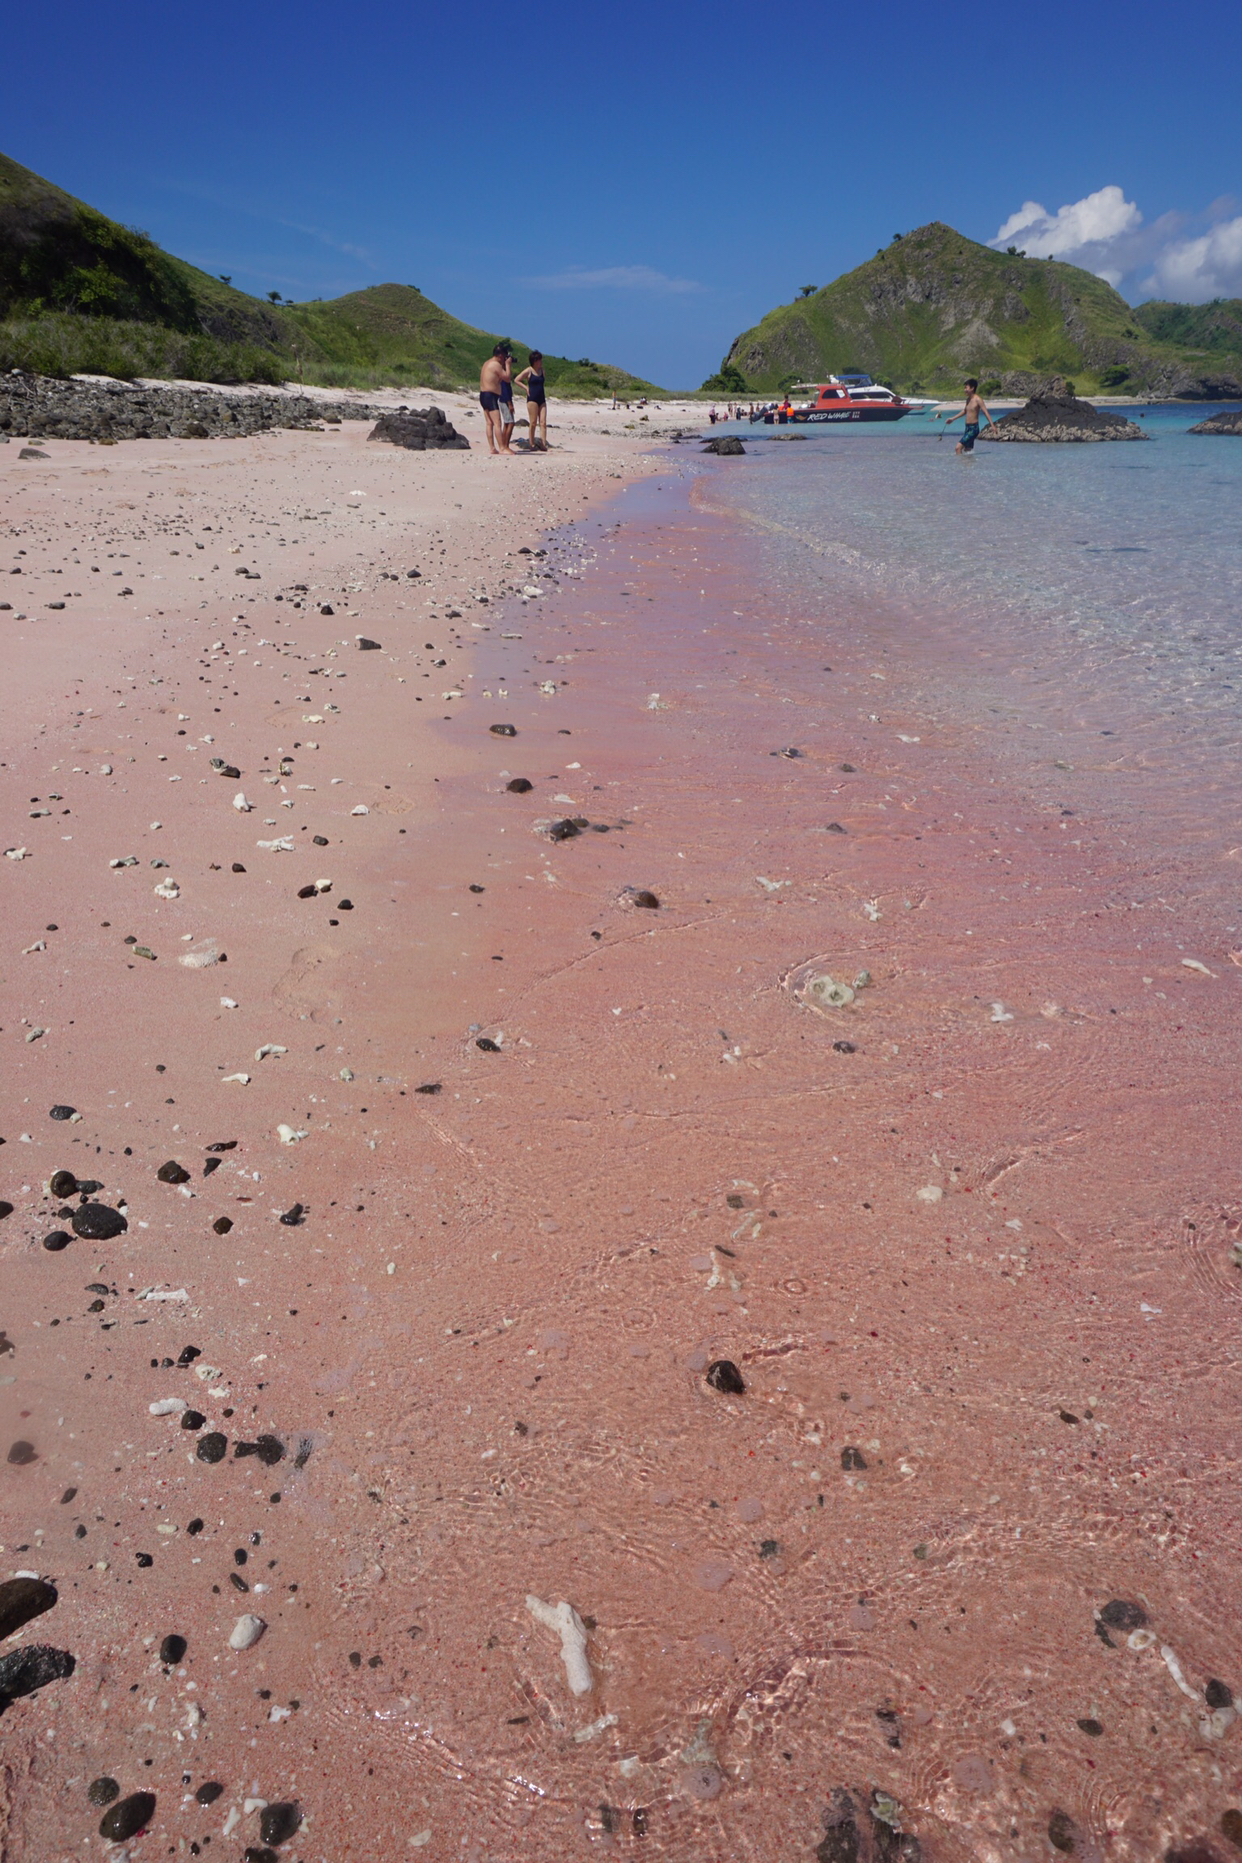 【印尼】「科莫多島」珊瑚粉色沙灘超夢幻！彷彿童話裡搬出來的世外桃源，碧藍海水與絕美海底世界，圓妳一個最浪漫的海島夢！ - 好想去喔